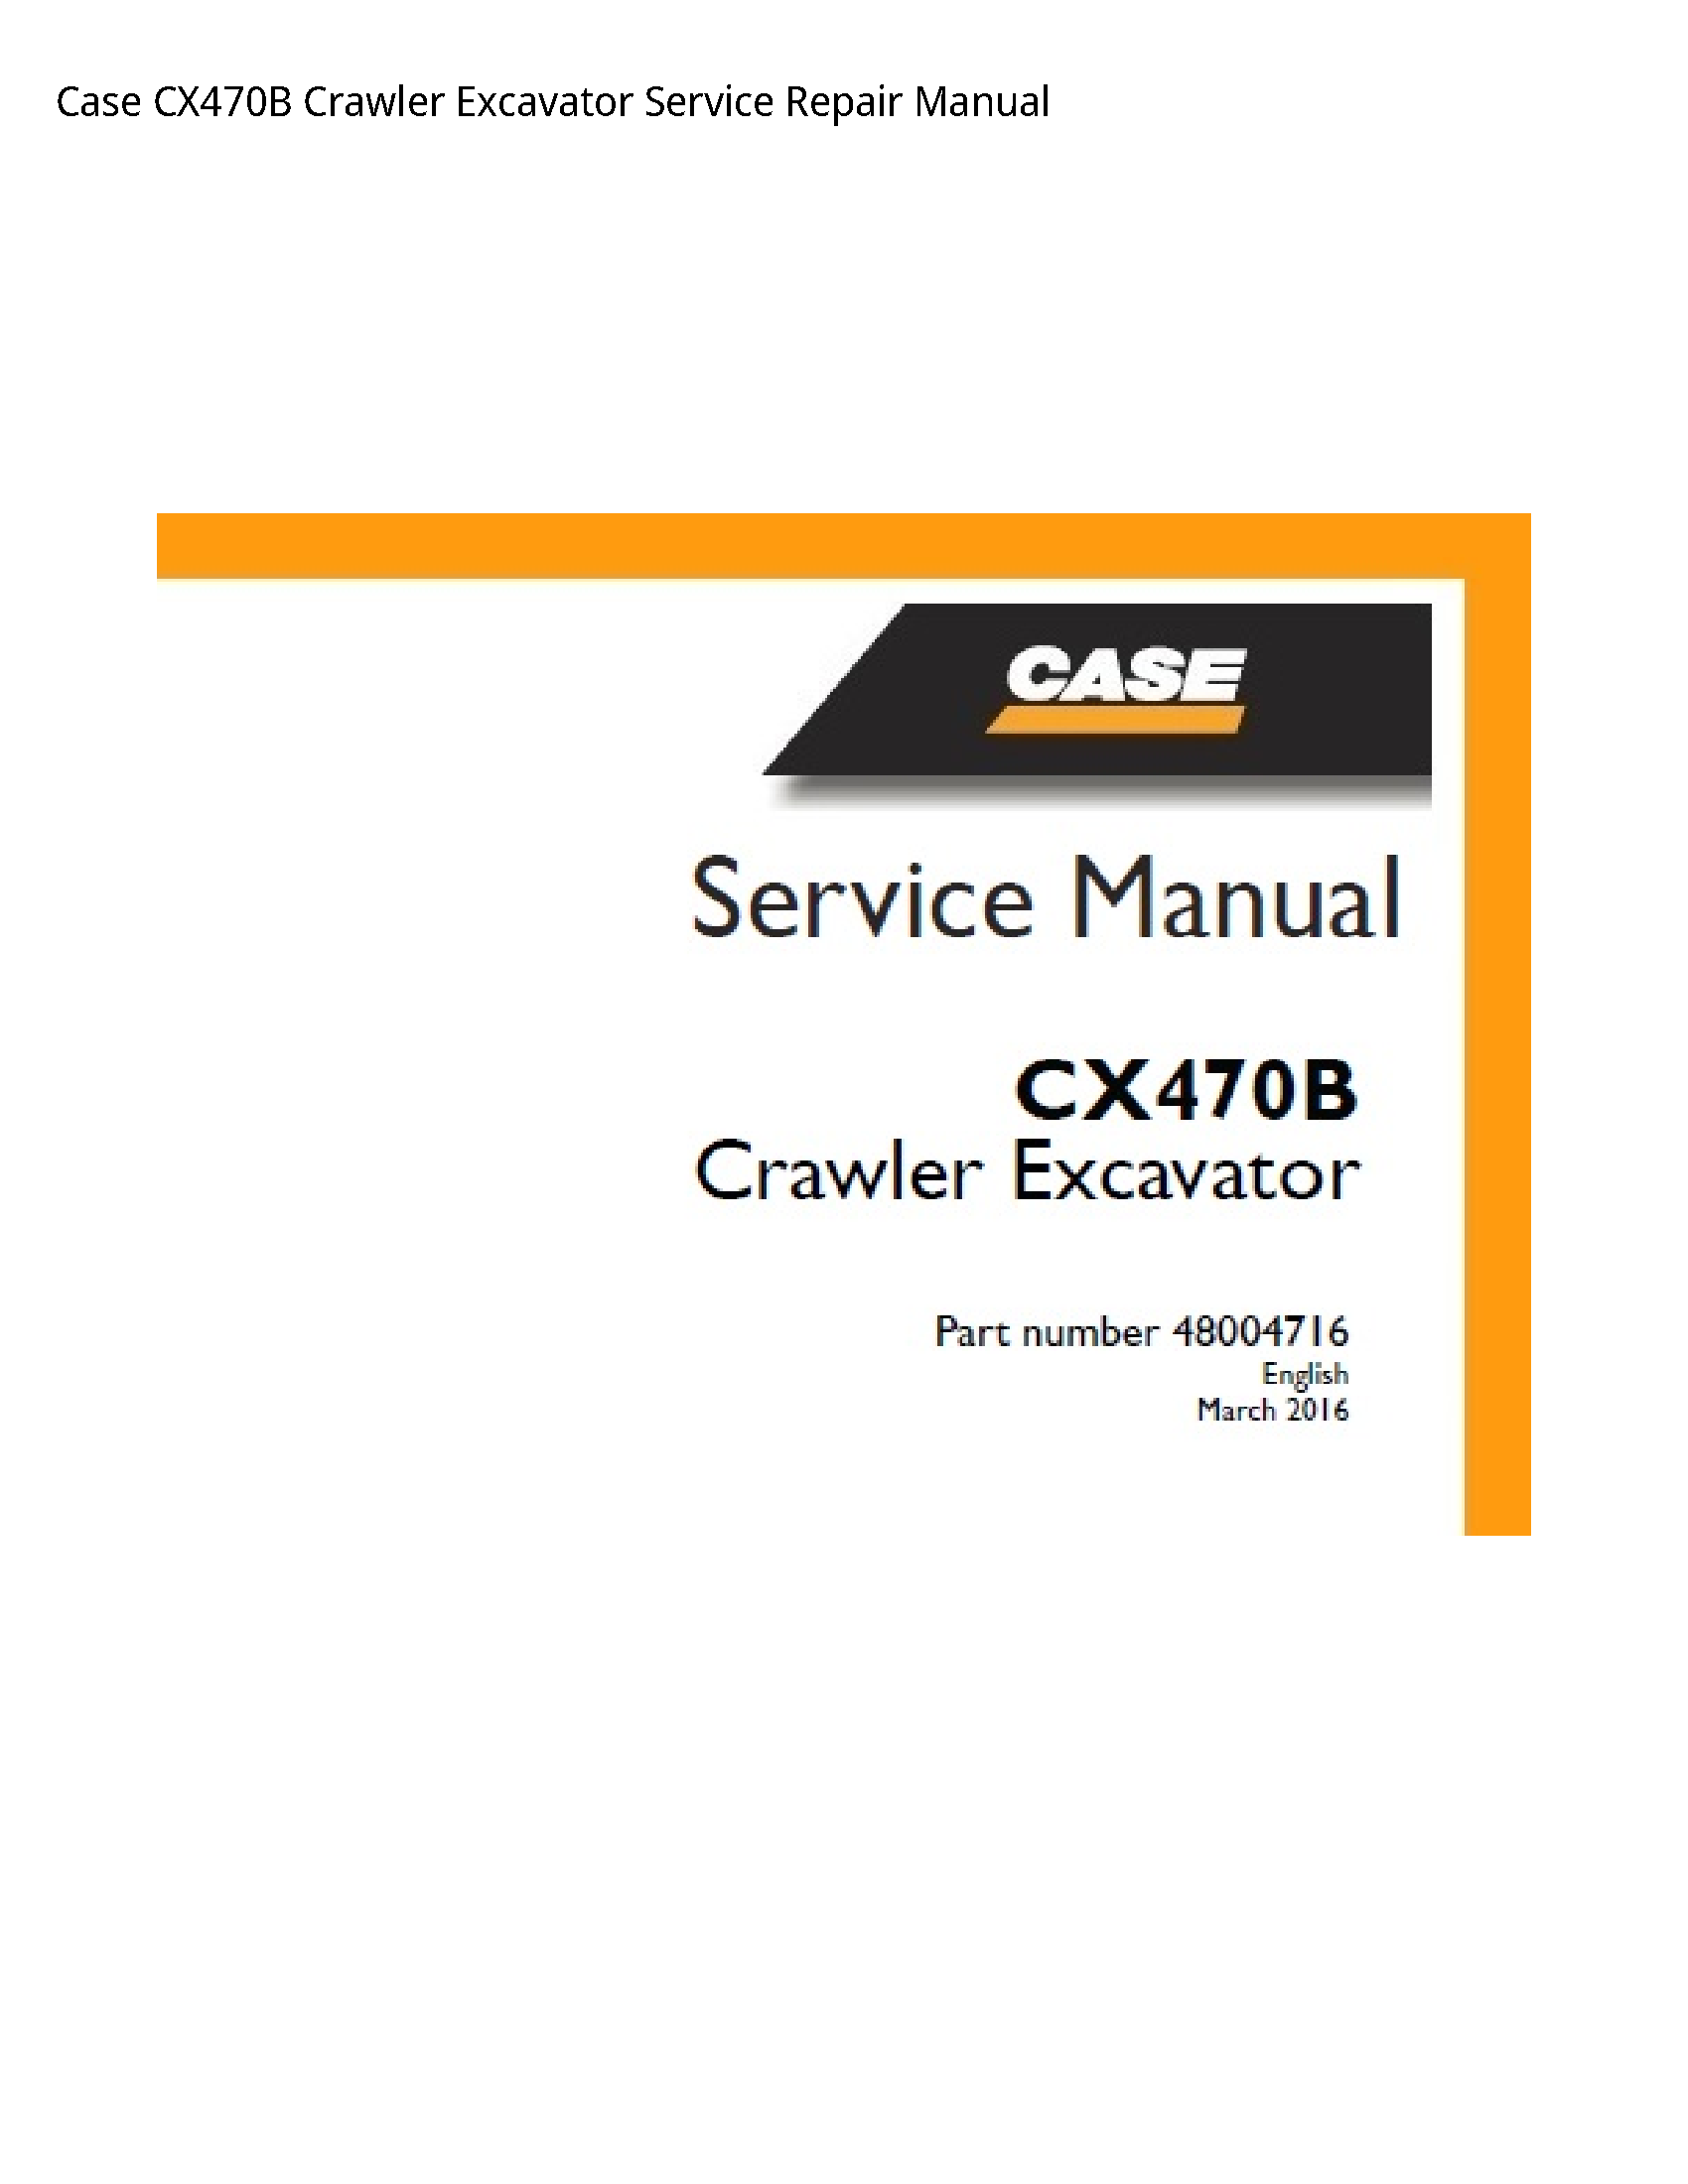 Case/Case IH CX470B Crawler Excavator manual